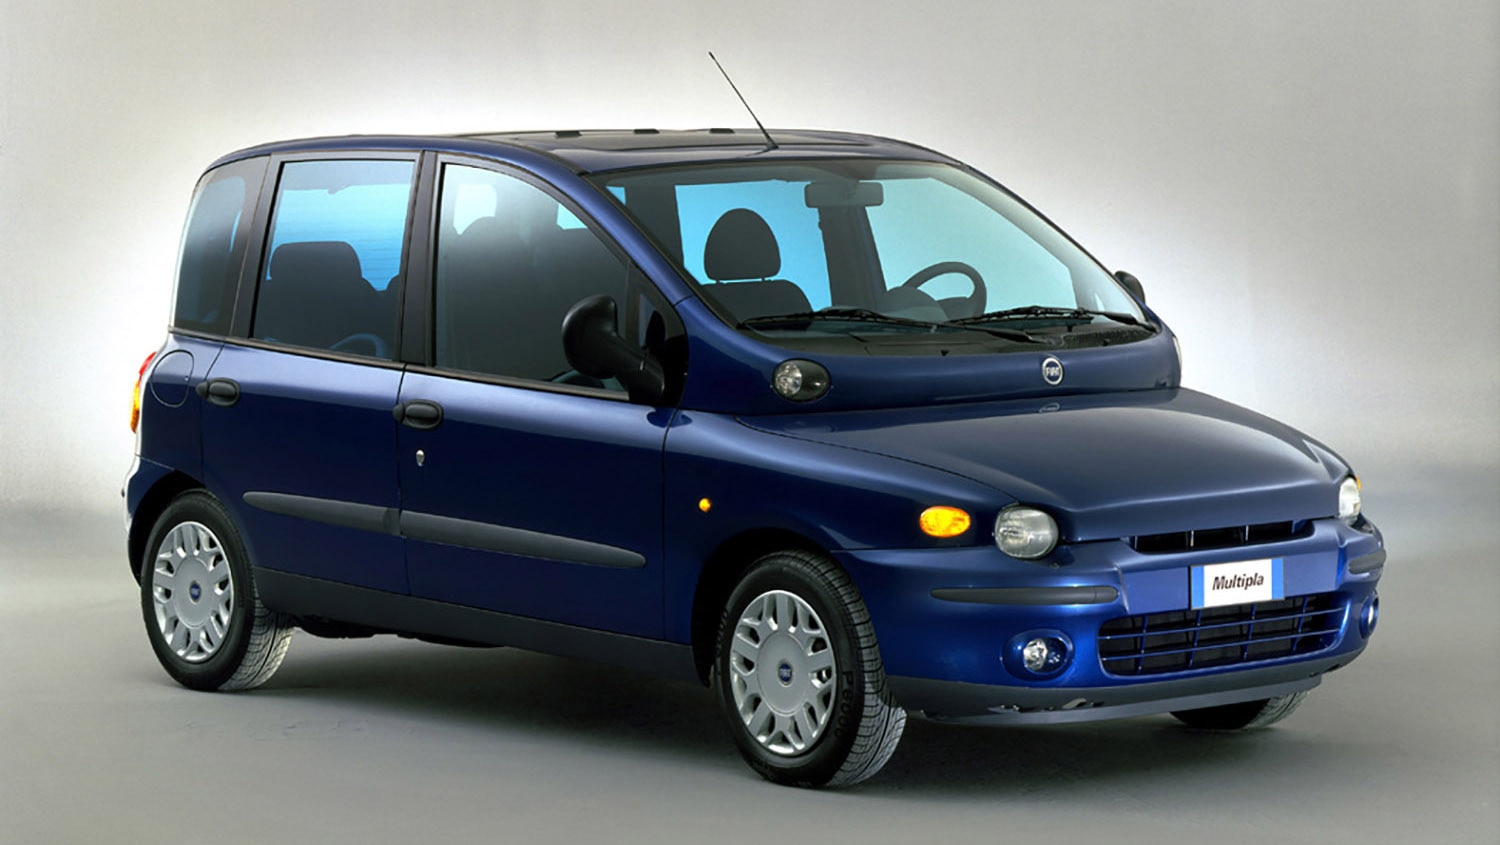 2002 Fiat Multipla in blue